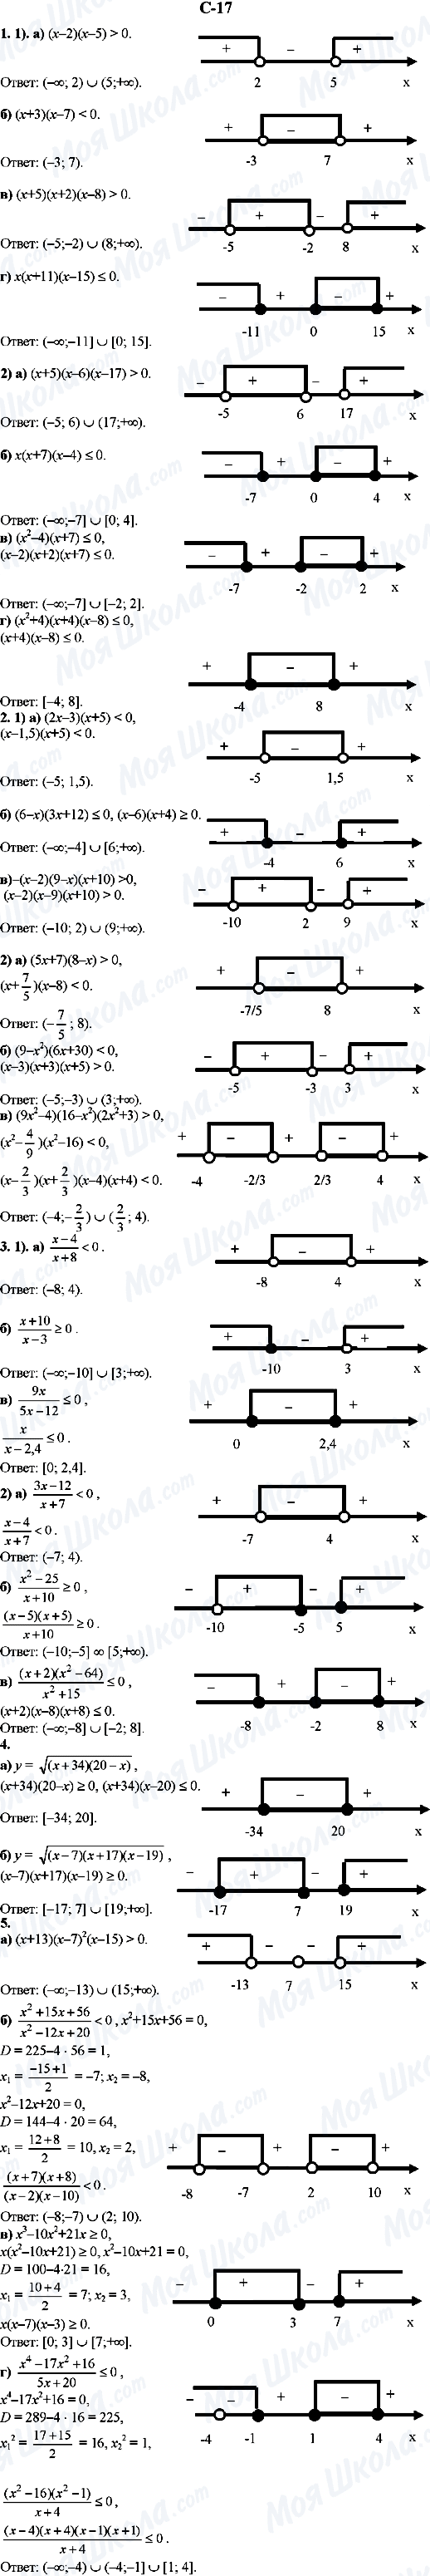 ГДЗ Алгебра 9 класс страница C-17